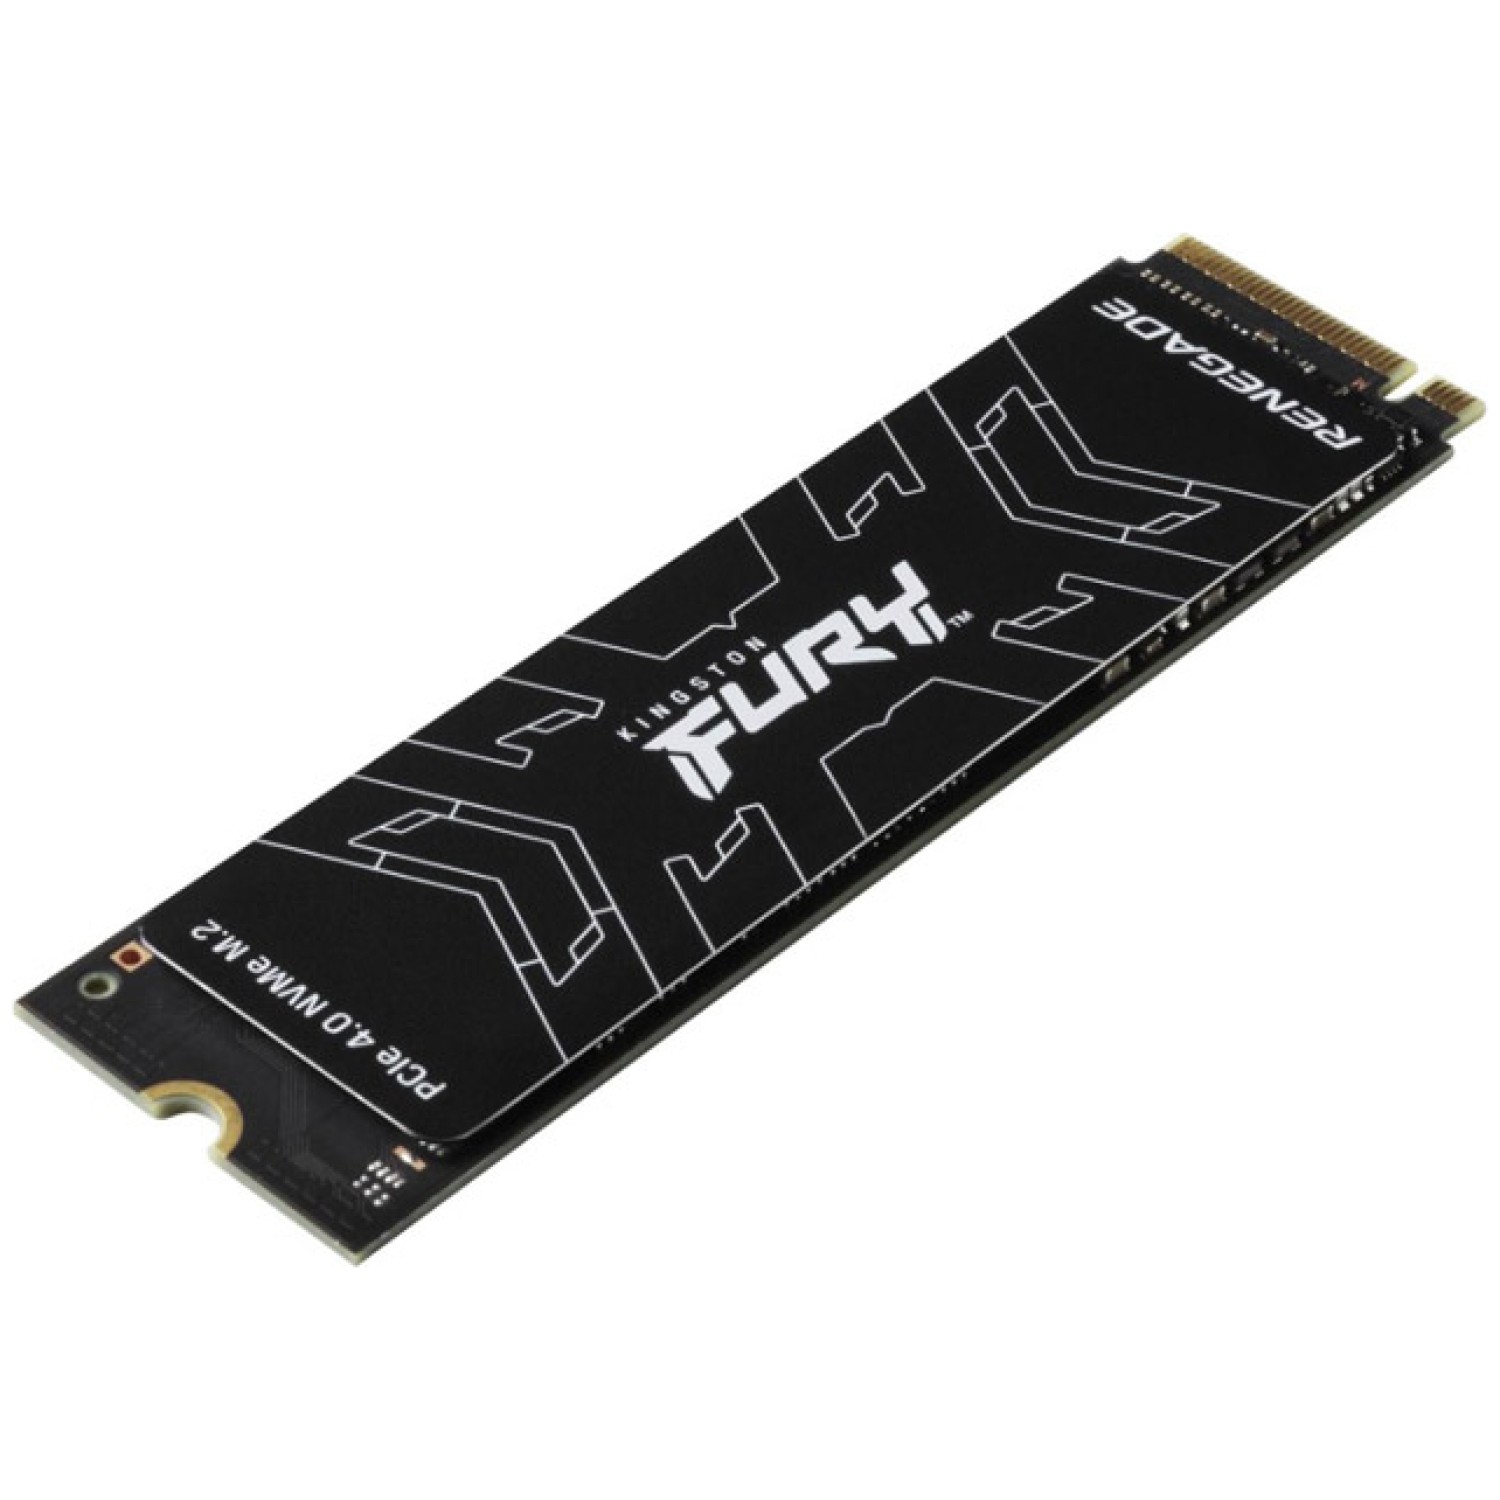 navdušence in zmogljive uporabnike Kingston FURY Renegade PCIe 4.0 NVMe M.2 SSD zagotavlja vrhunsko zmogljivost pri visokih zmogljivostih za ljubitelje iger in strojne opreme